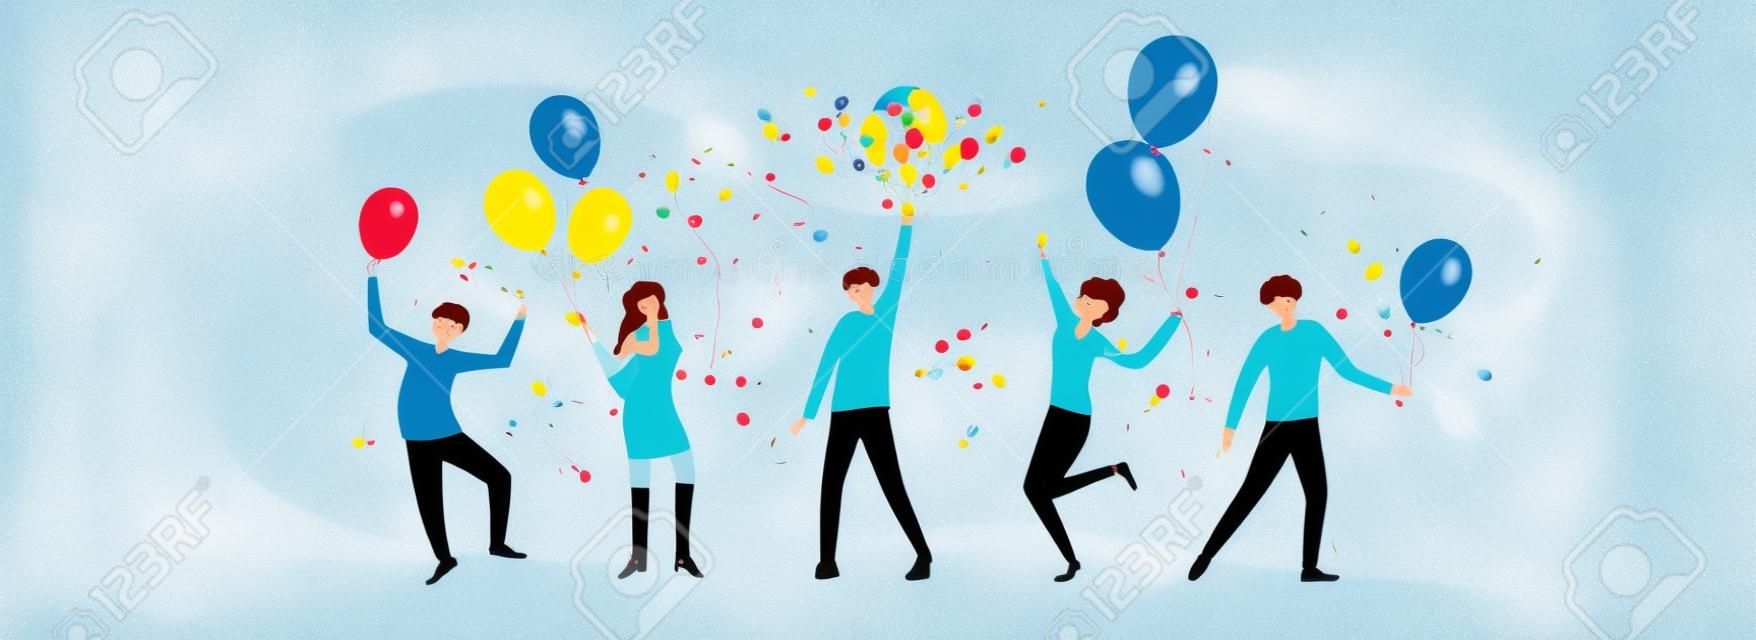 Feliz fiesta de cumpleaños y gente bailando con globos de vacaciones. grupo de hombres y mujeres jóvenes divirtiéndose y celebrando cumpleaños. la ilustración es para el diseño de vacaciones, tarjetas, invitación, pancartas, afiches